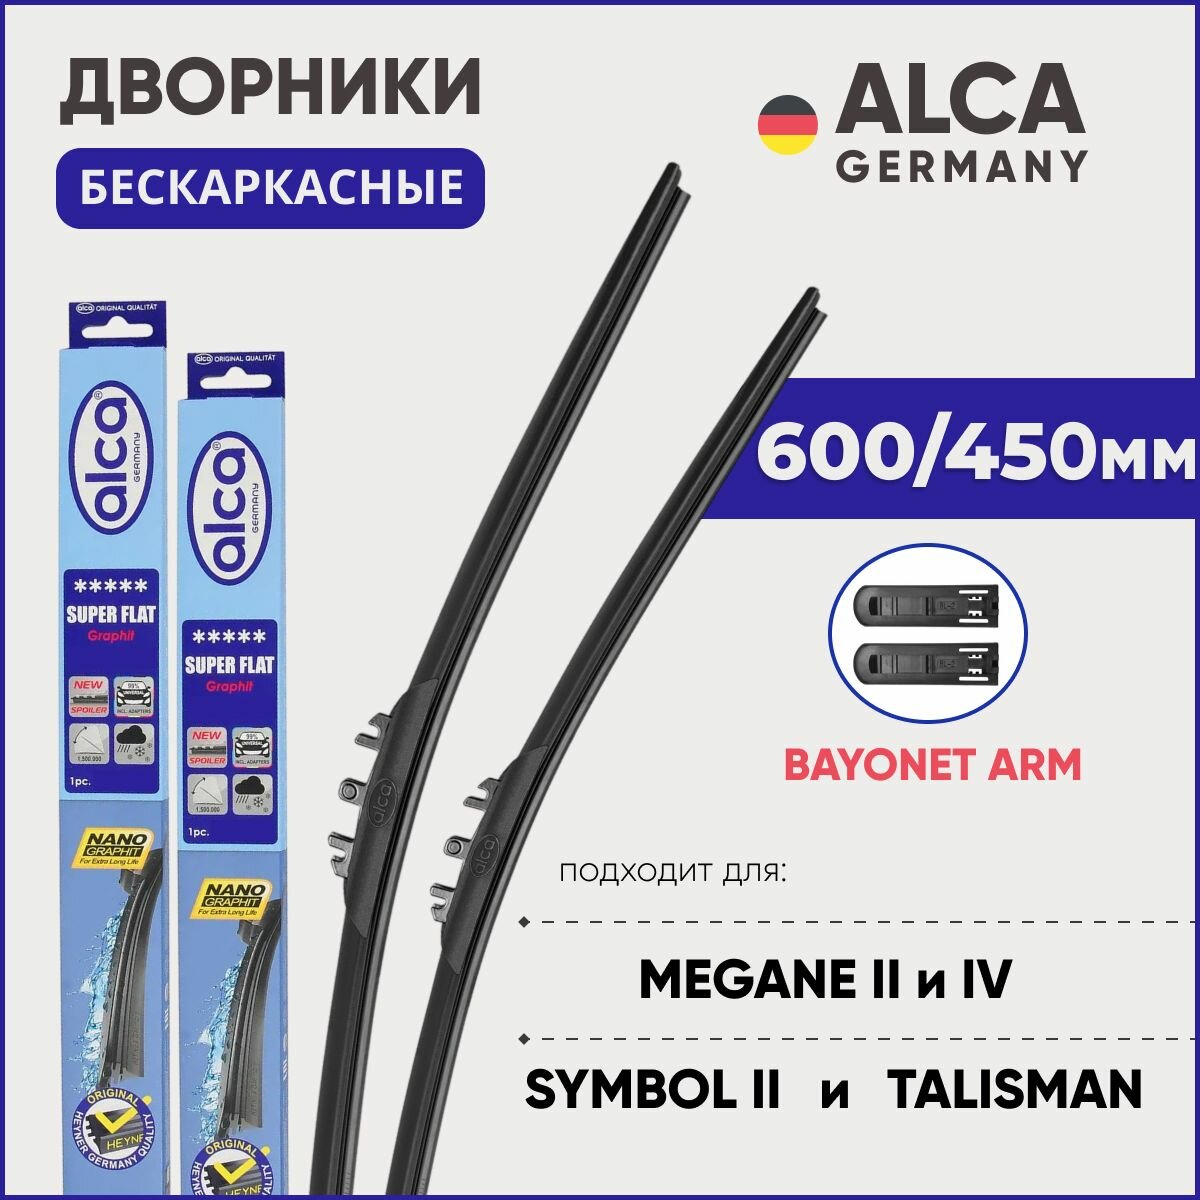 Дворники для Renault Megane 2 (2-ая фаза) / Megane 4 / Talisman / Symbol 2 600/450 мм бескаркасные ALCA (Германия) с креплением Bayonet Arm